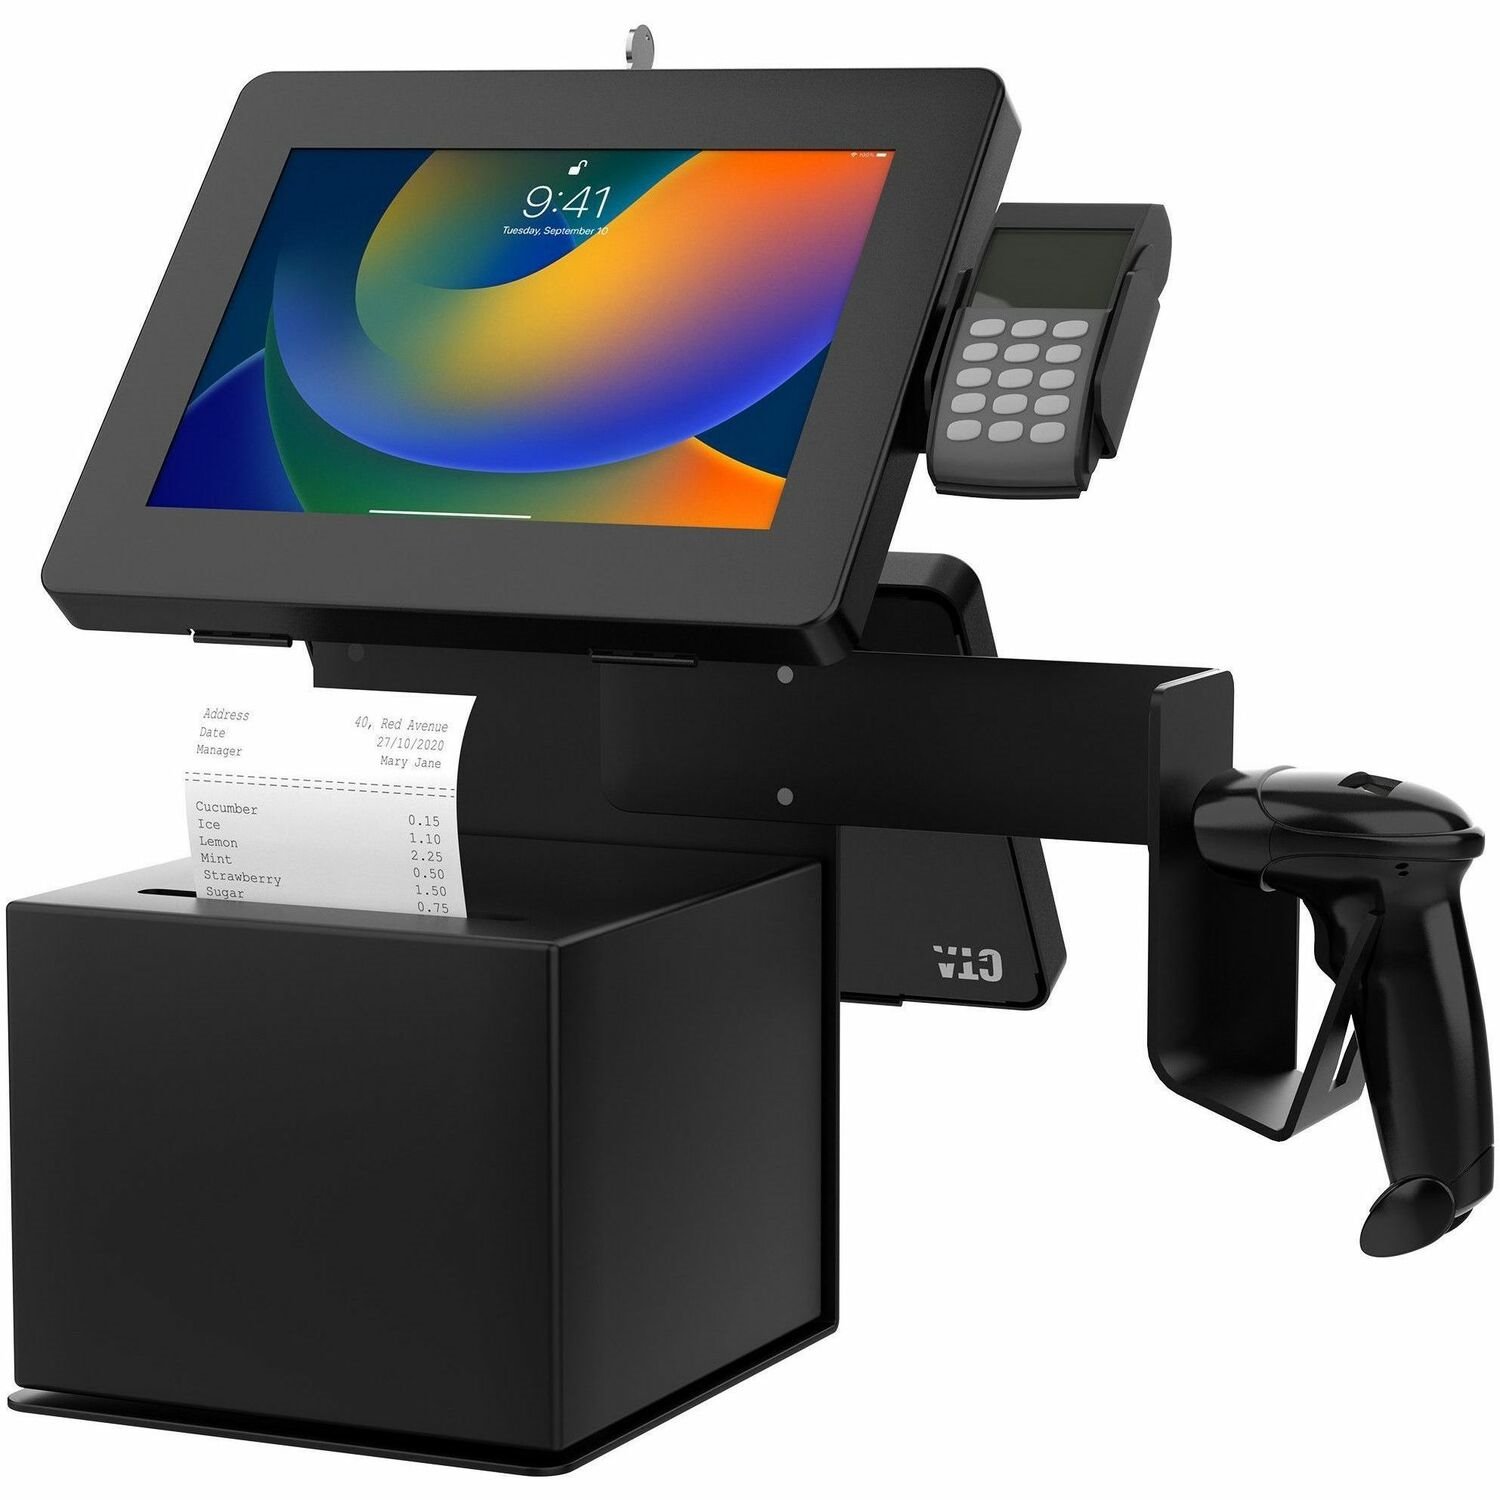 CTA Digital POS Station with Printer Stand, Magnetic Scanner Holder, Card Reader Holder & 2 Security Enclosures